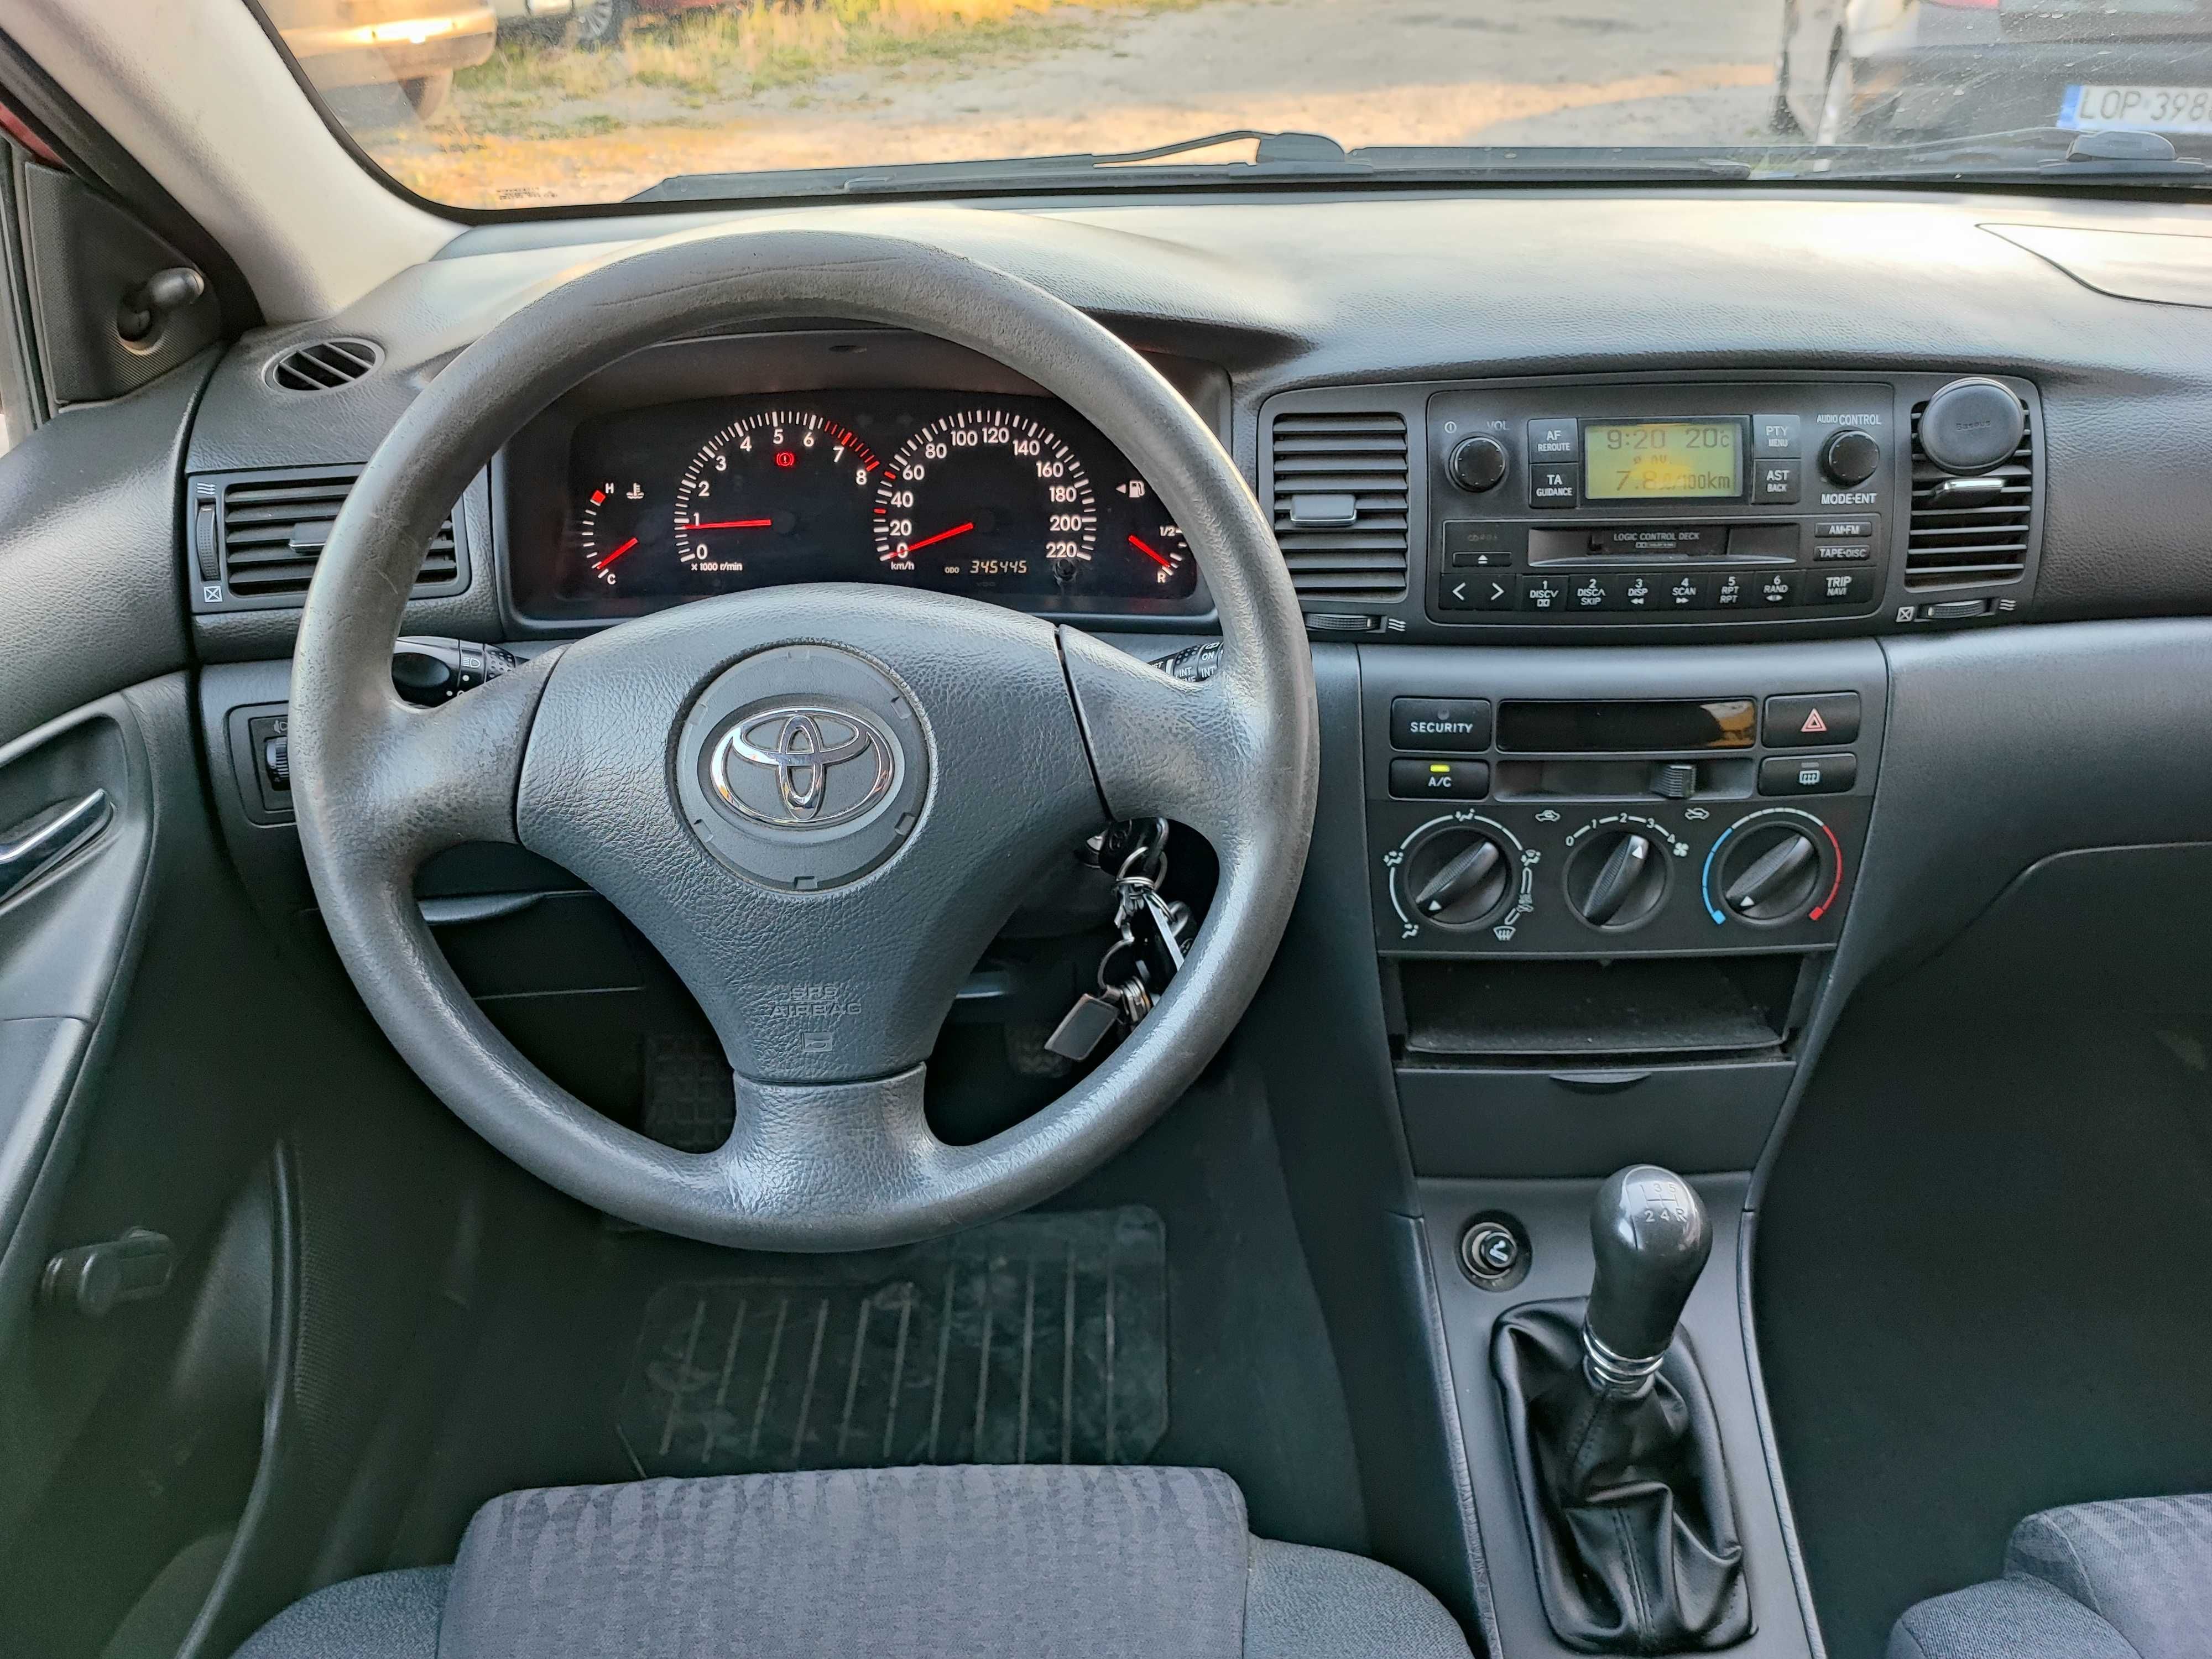 Toyota Corolla 1,4 VVT-i nowe opony, serwisowana, stan auta bdb